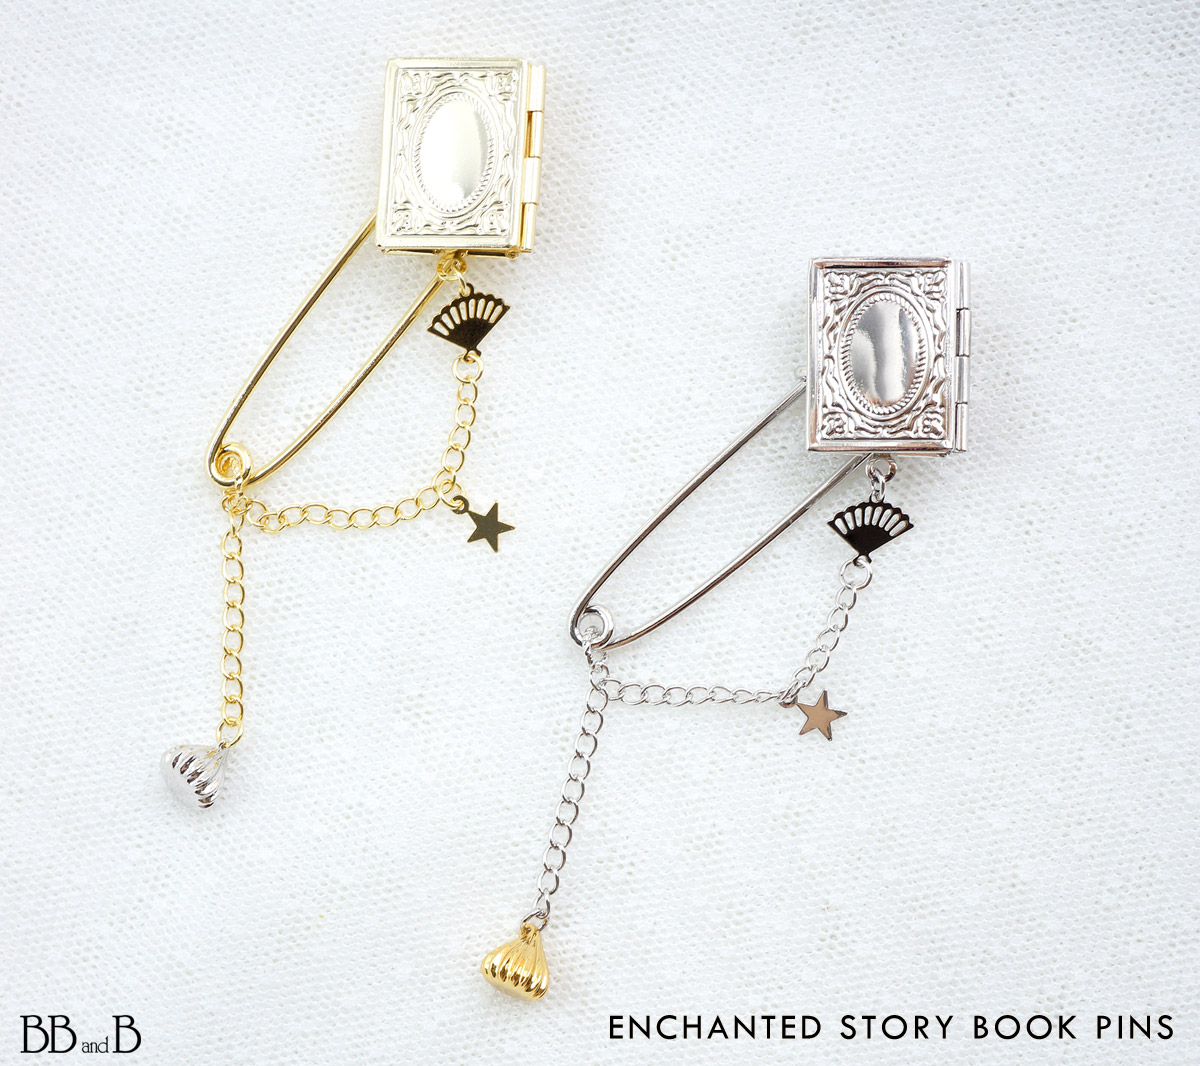 Enchanted Story Book Pins